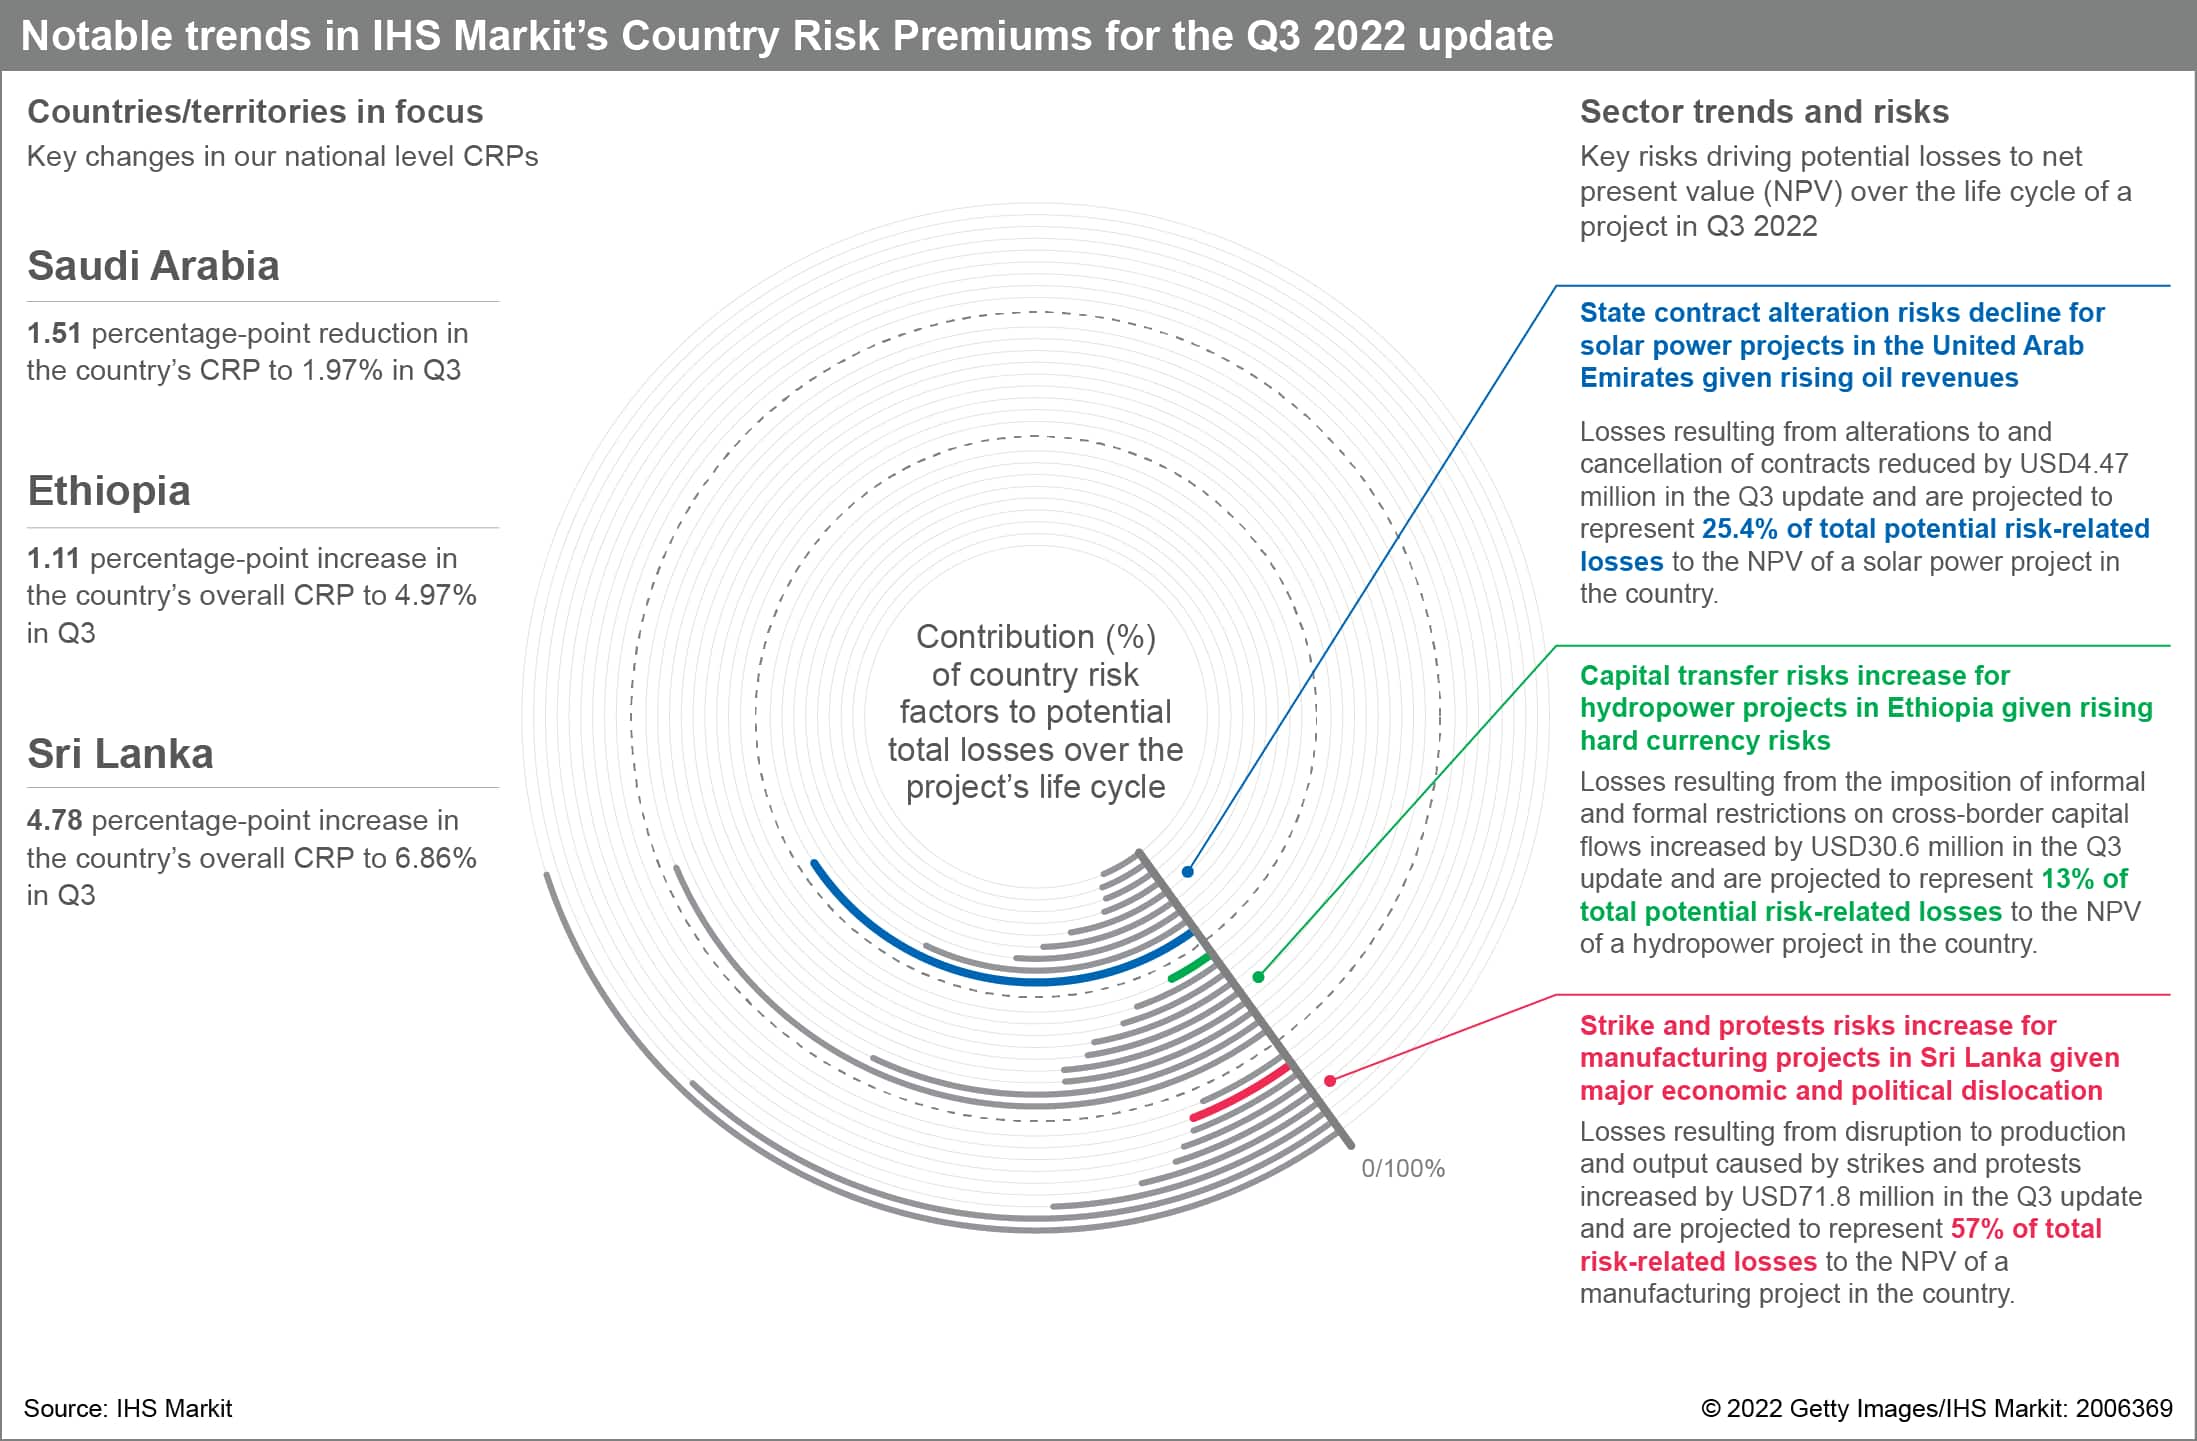 Country Risk Premium influences Q3 2022